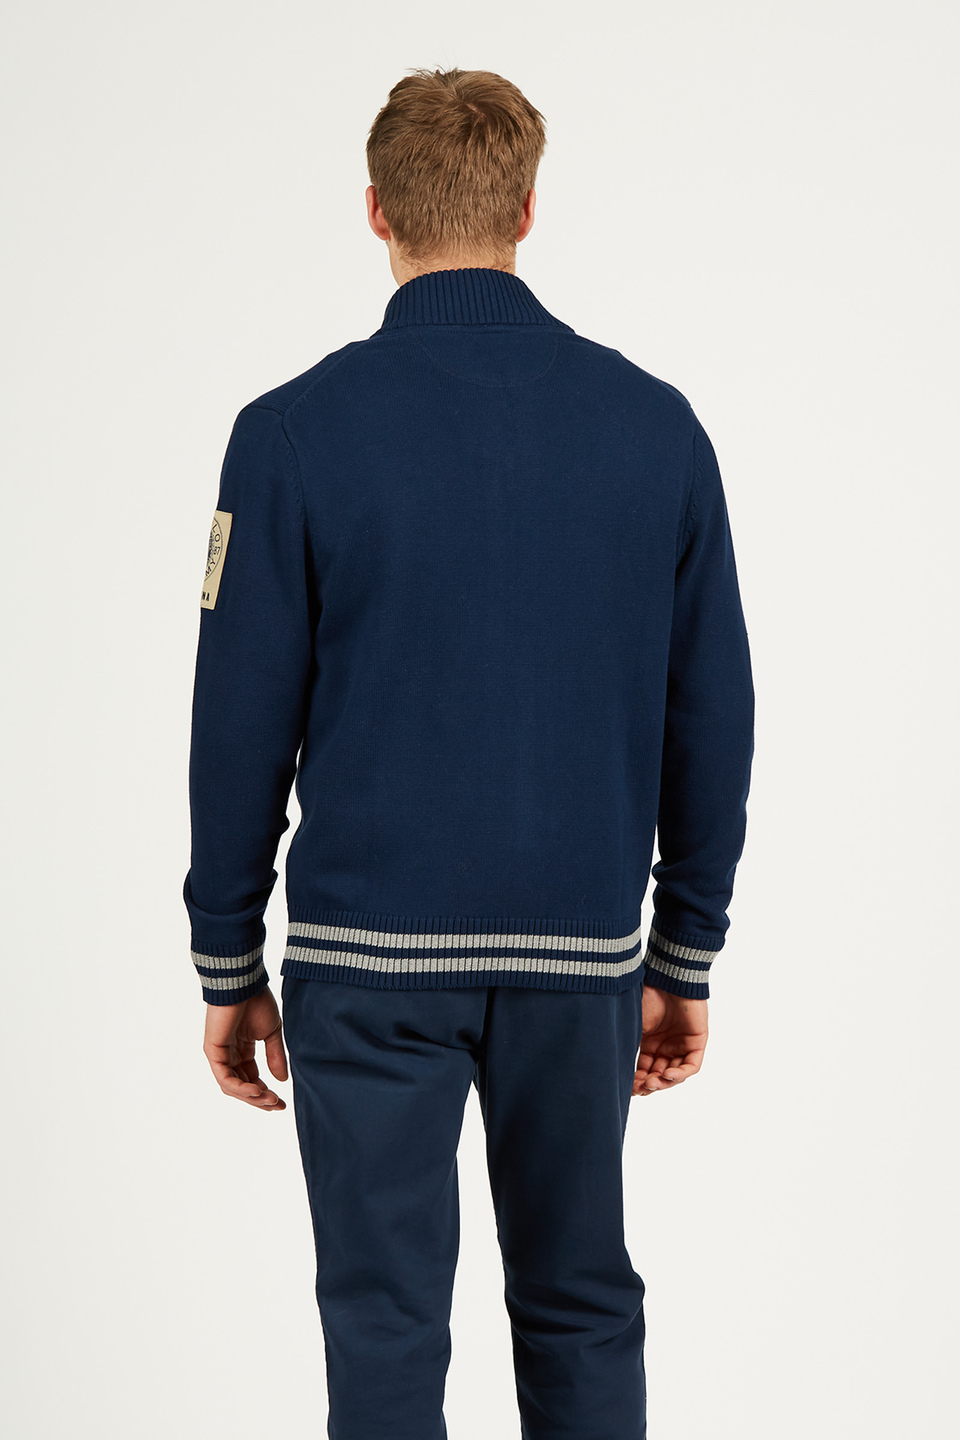 Men’s sweatshirt with front zip closure in 100% cotton comfort fit | La Martina - Official Online Shop